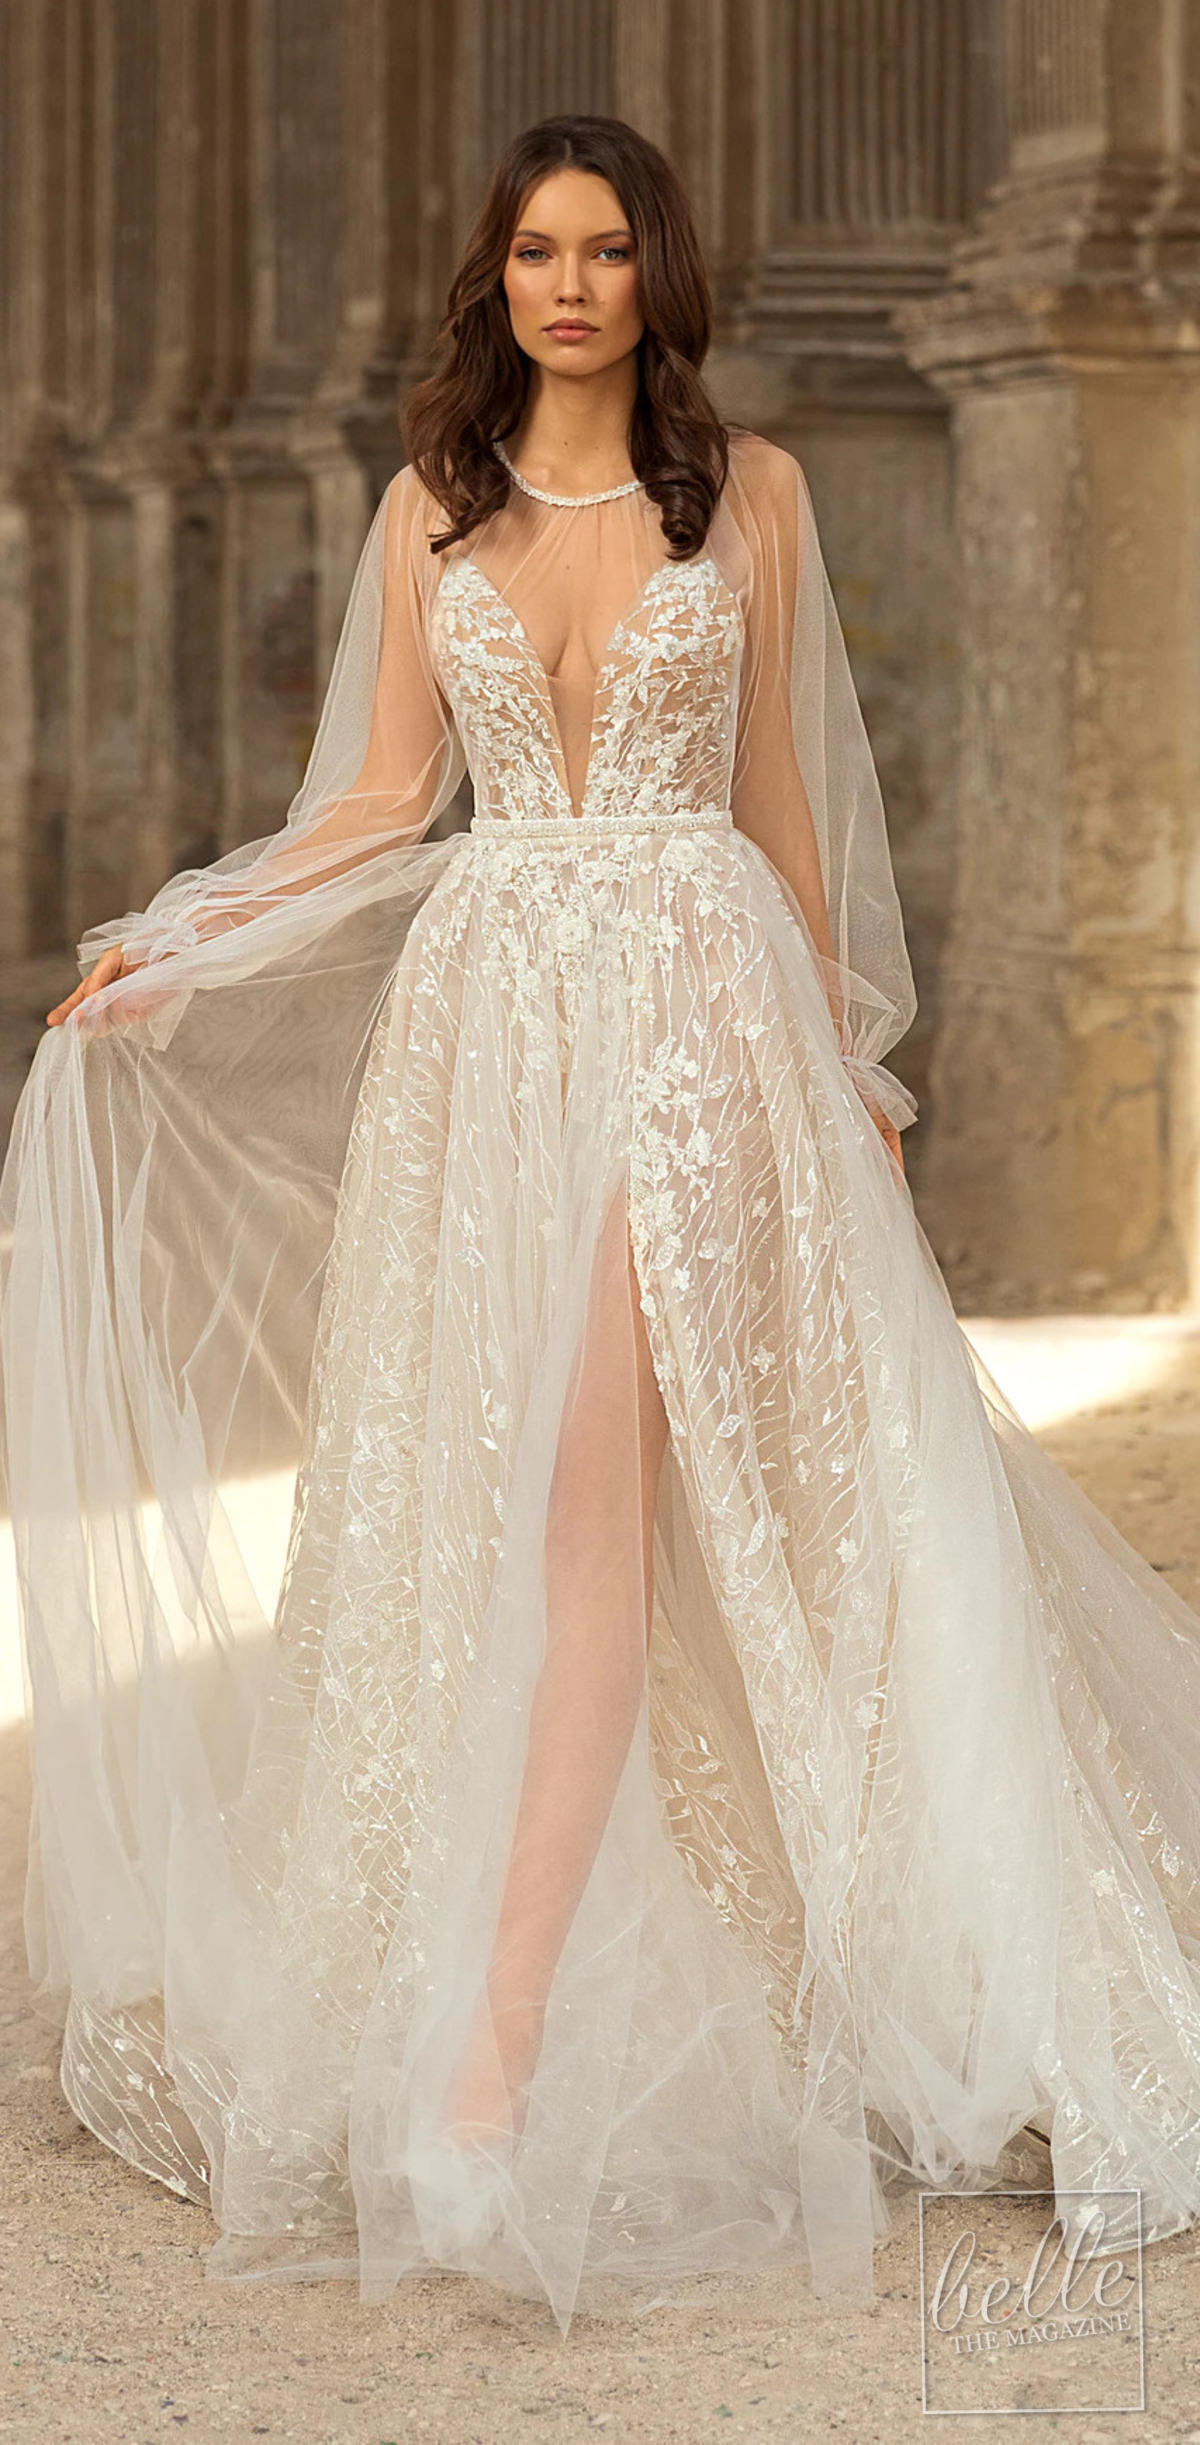 Wedding dress trends 2021 - Capes- EVA LENDEL CAPE Carol